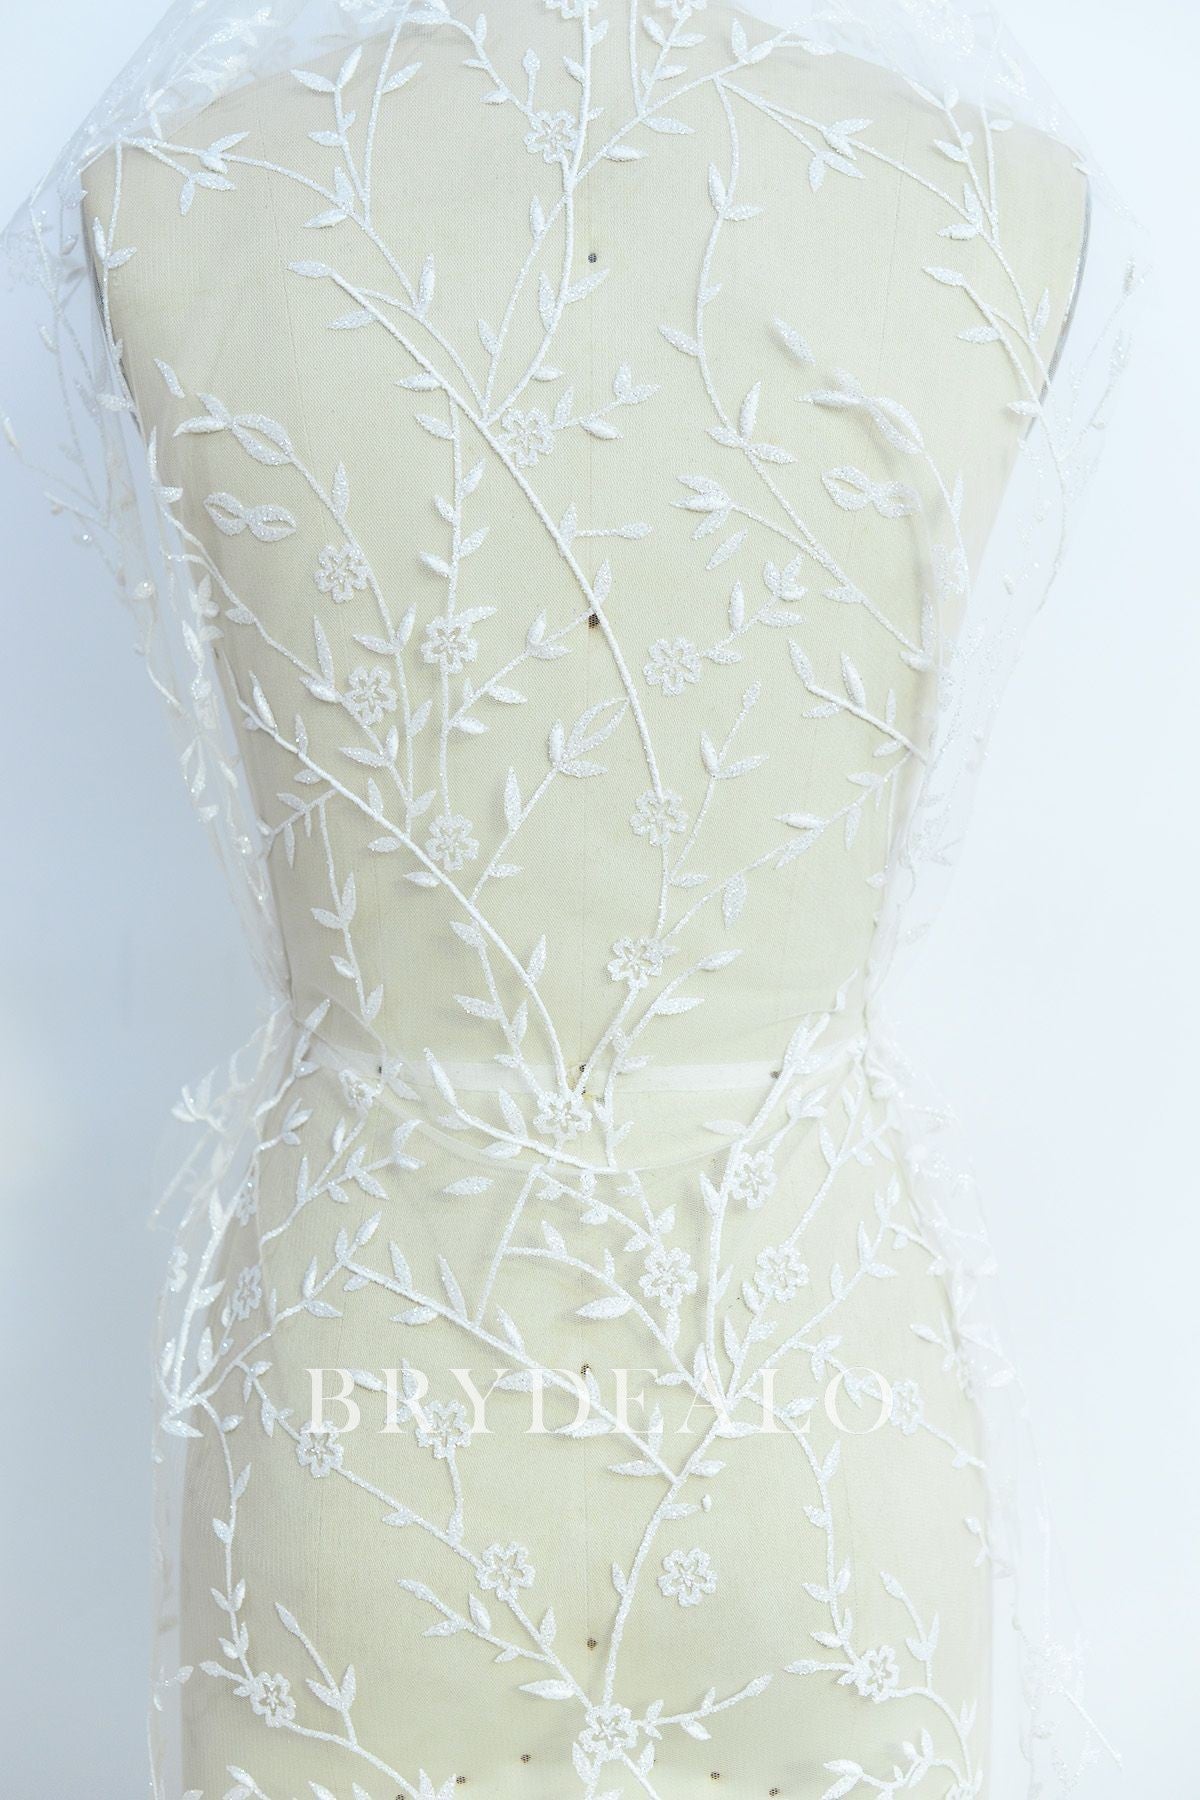 Glittery Leaf Motif Bridal Lace Fabric